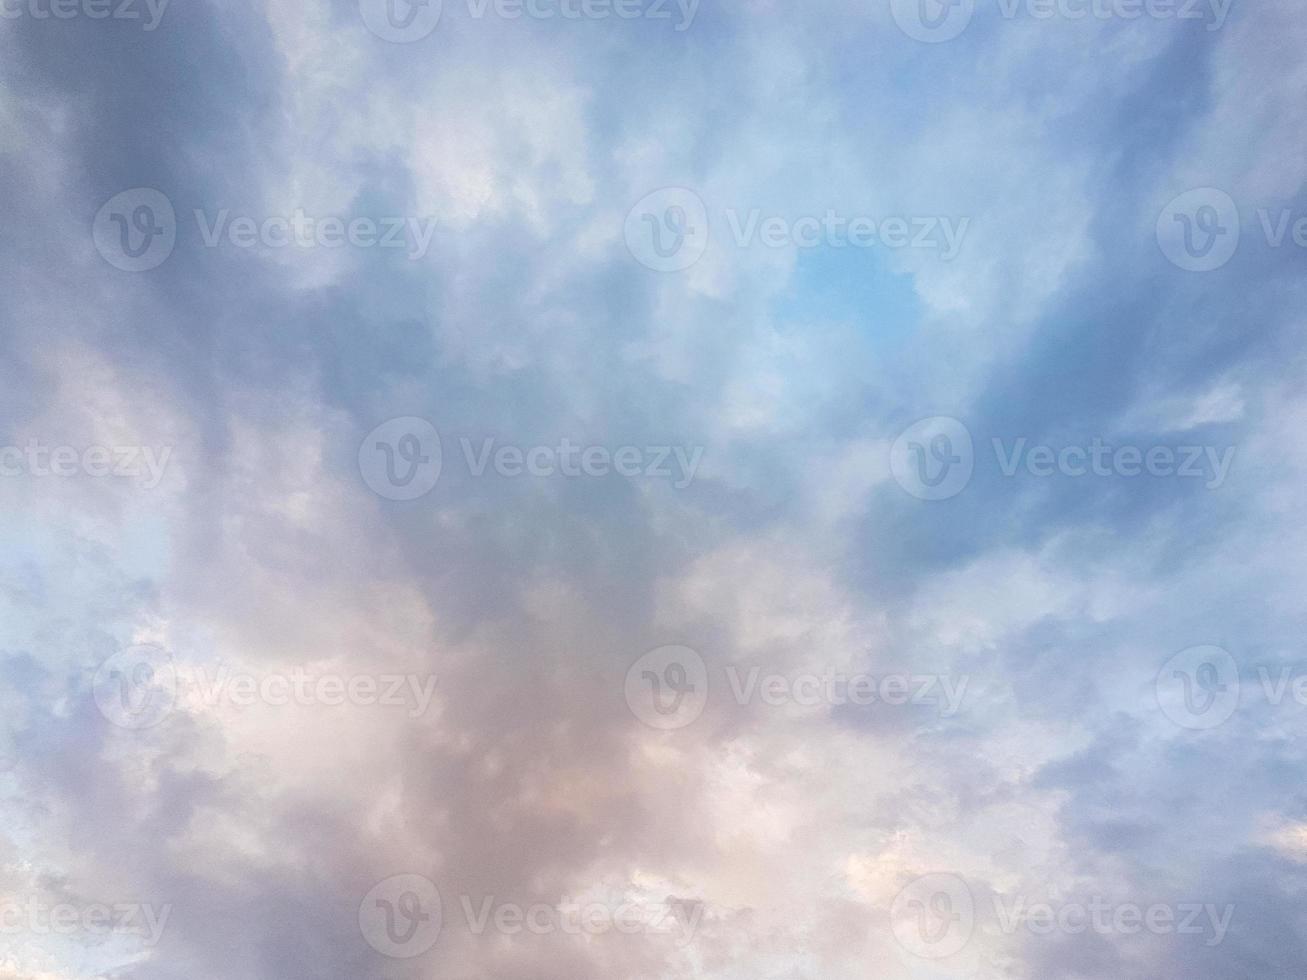 Himmel mit Wolken Landschaft Hintergrund foto